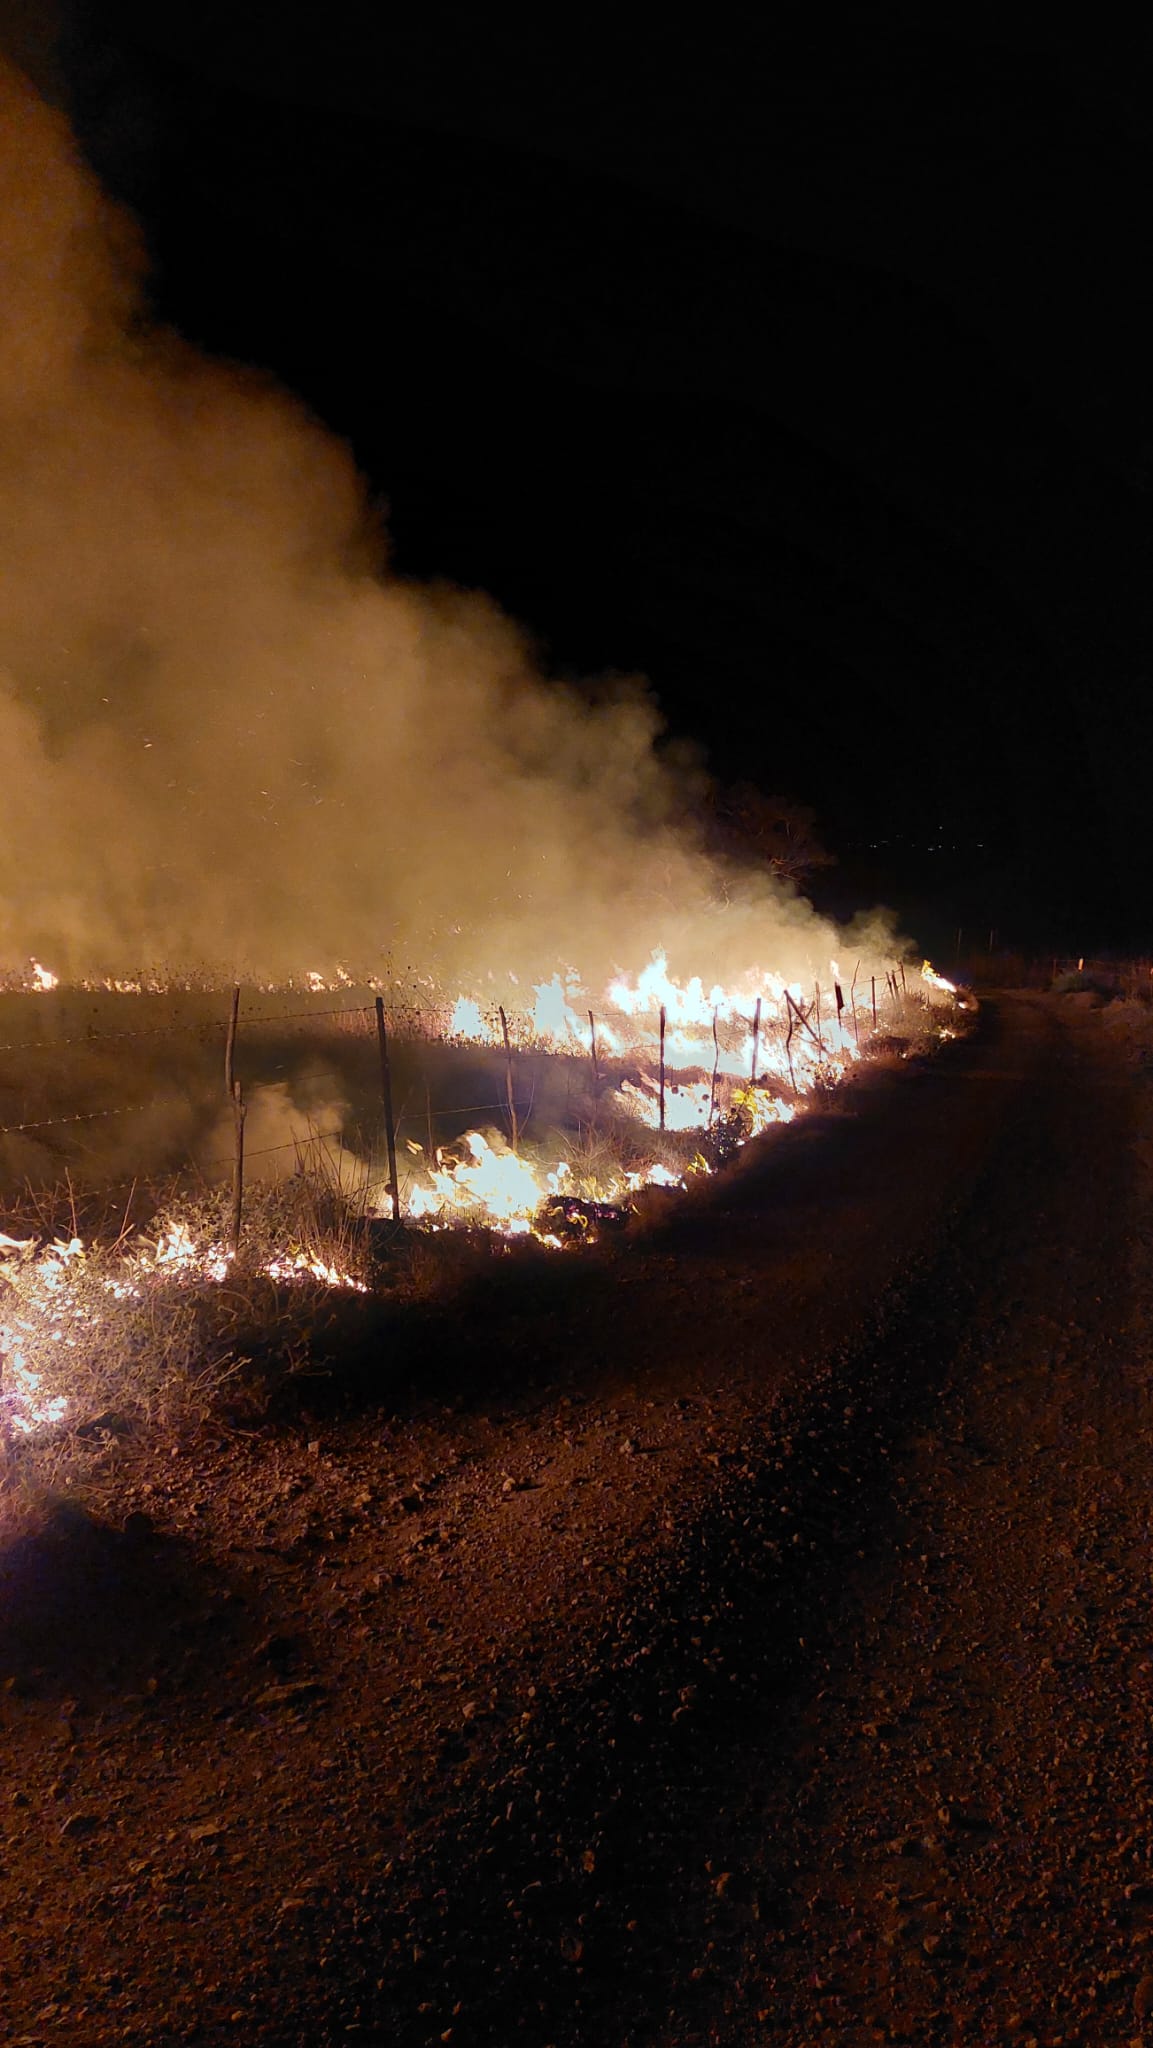 שריפת קוצים בתל-עזזית סמוך לשניר שבגליל העליון